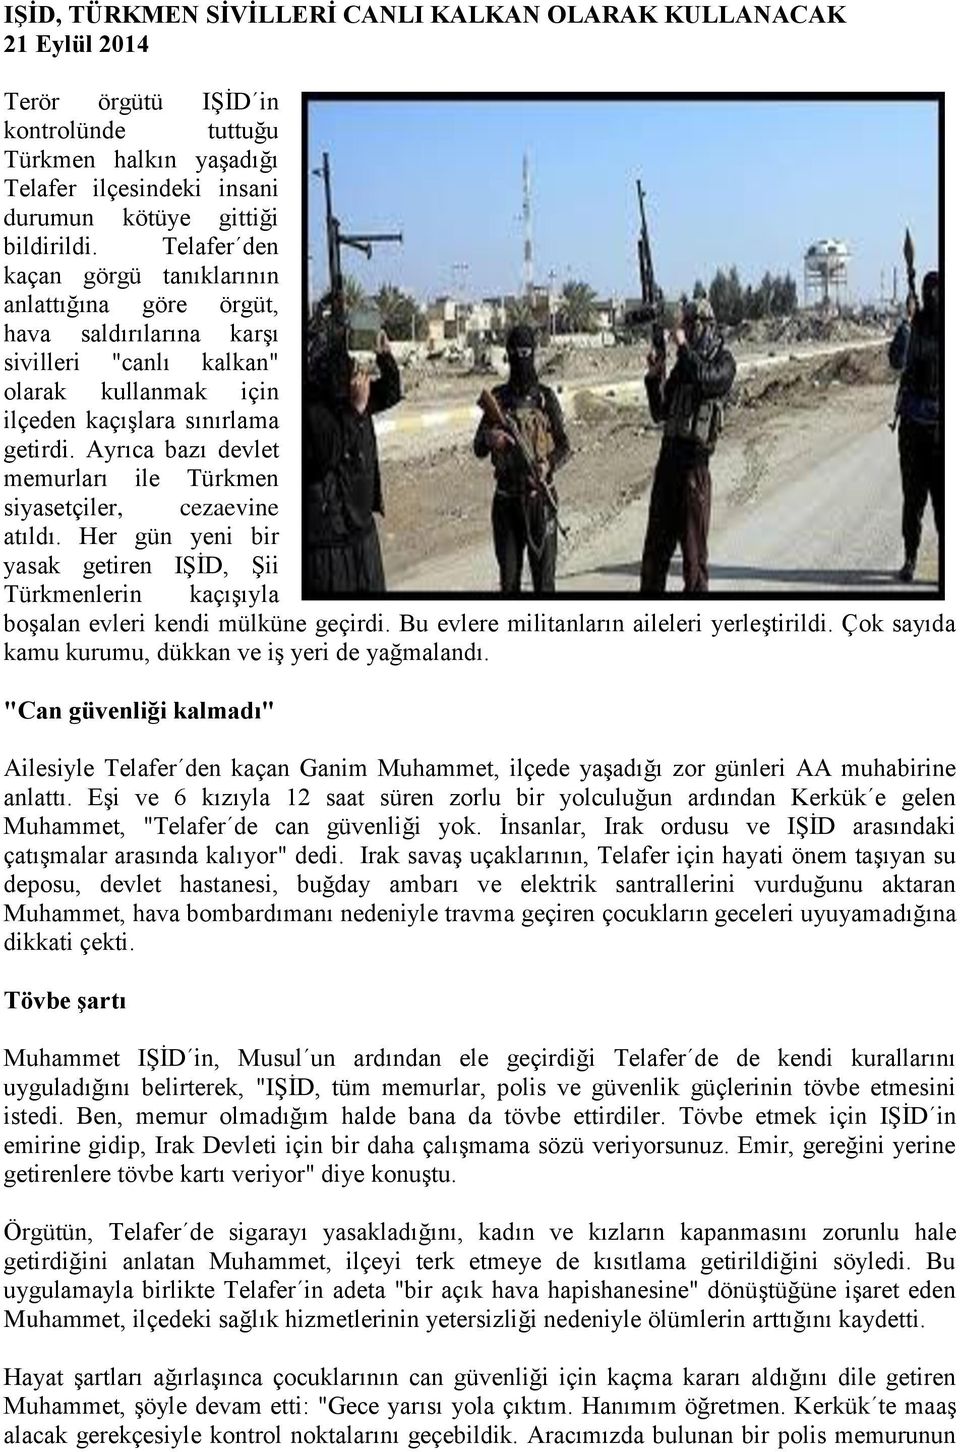 Ayrıca bazı devlet memurları ile Türkmen siyasetçiler, cezaevine atıldı. Her gün yeni bir yasak getiren IŞİD, Şii Türkmenlerin kaçışıyla boşalan evleri kendi mülküne geçirdi.